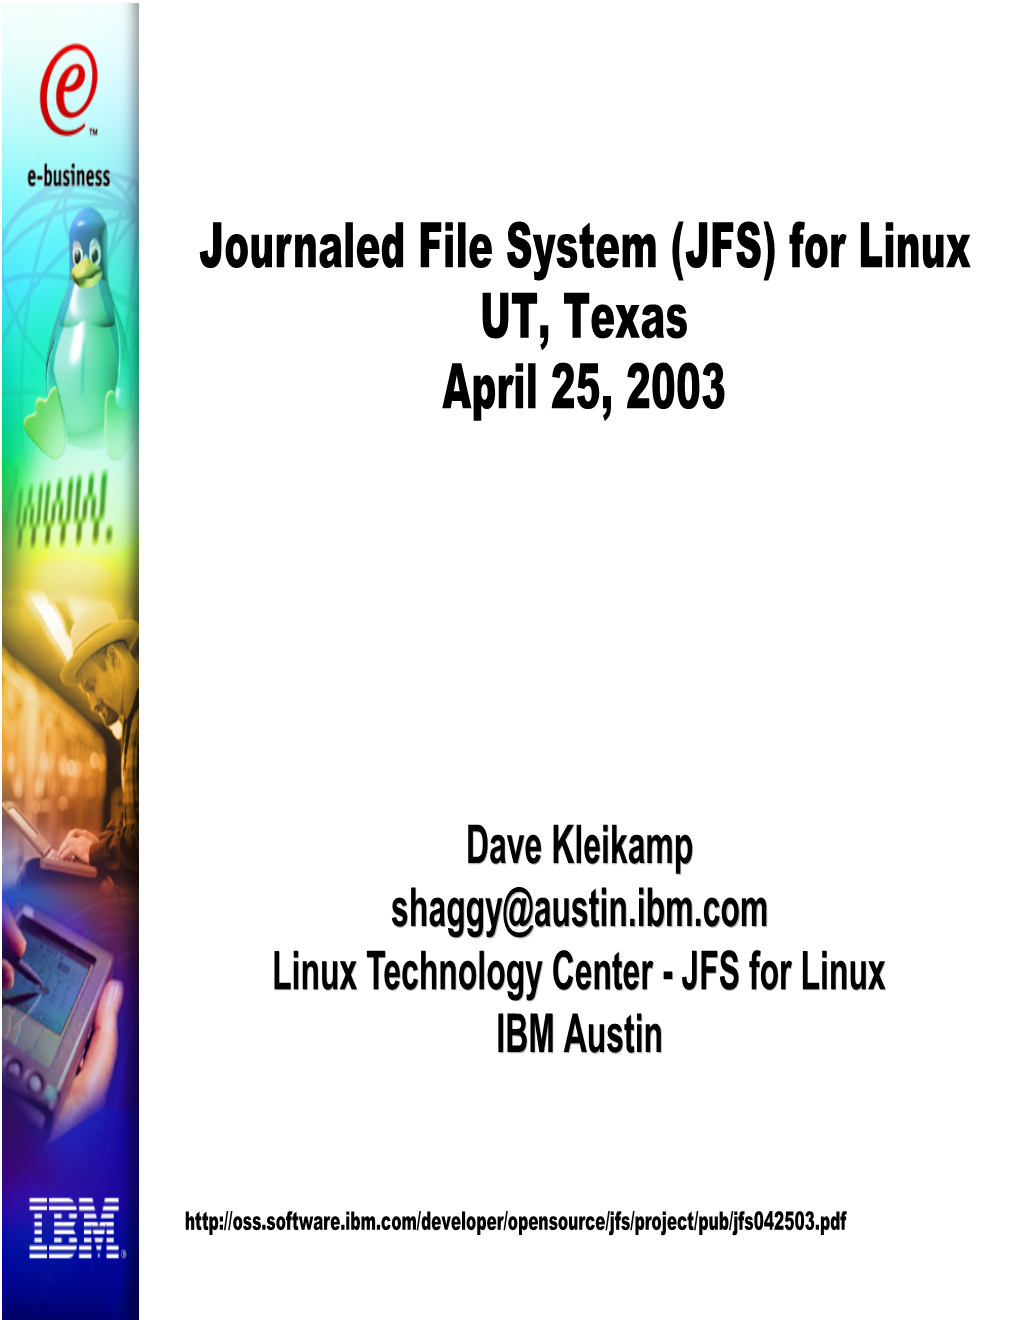 Journaled File System (JFS) for Linux UT, Texas April 25, 2003